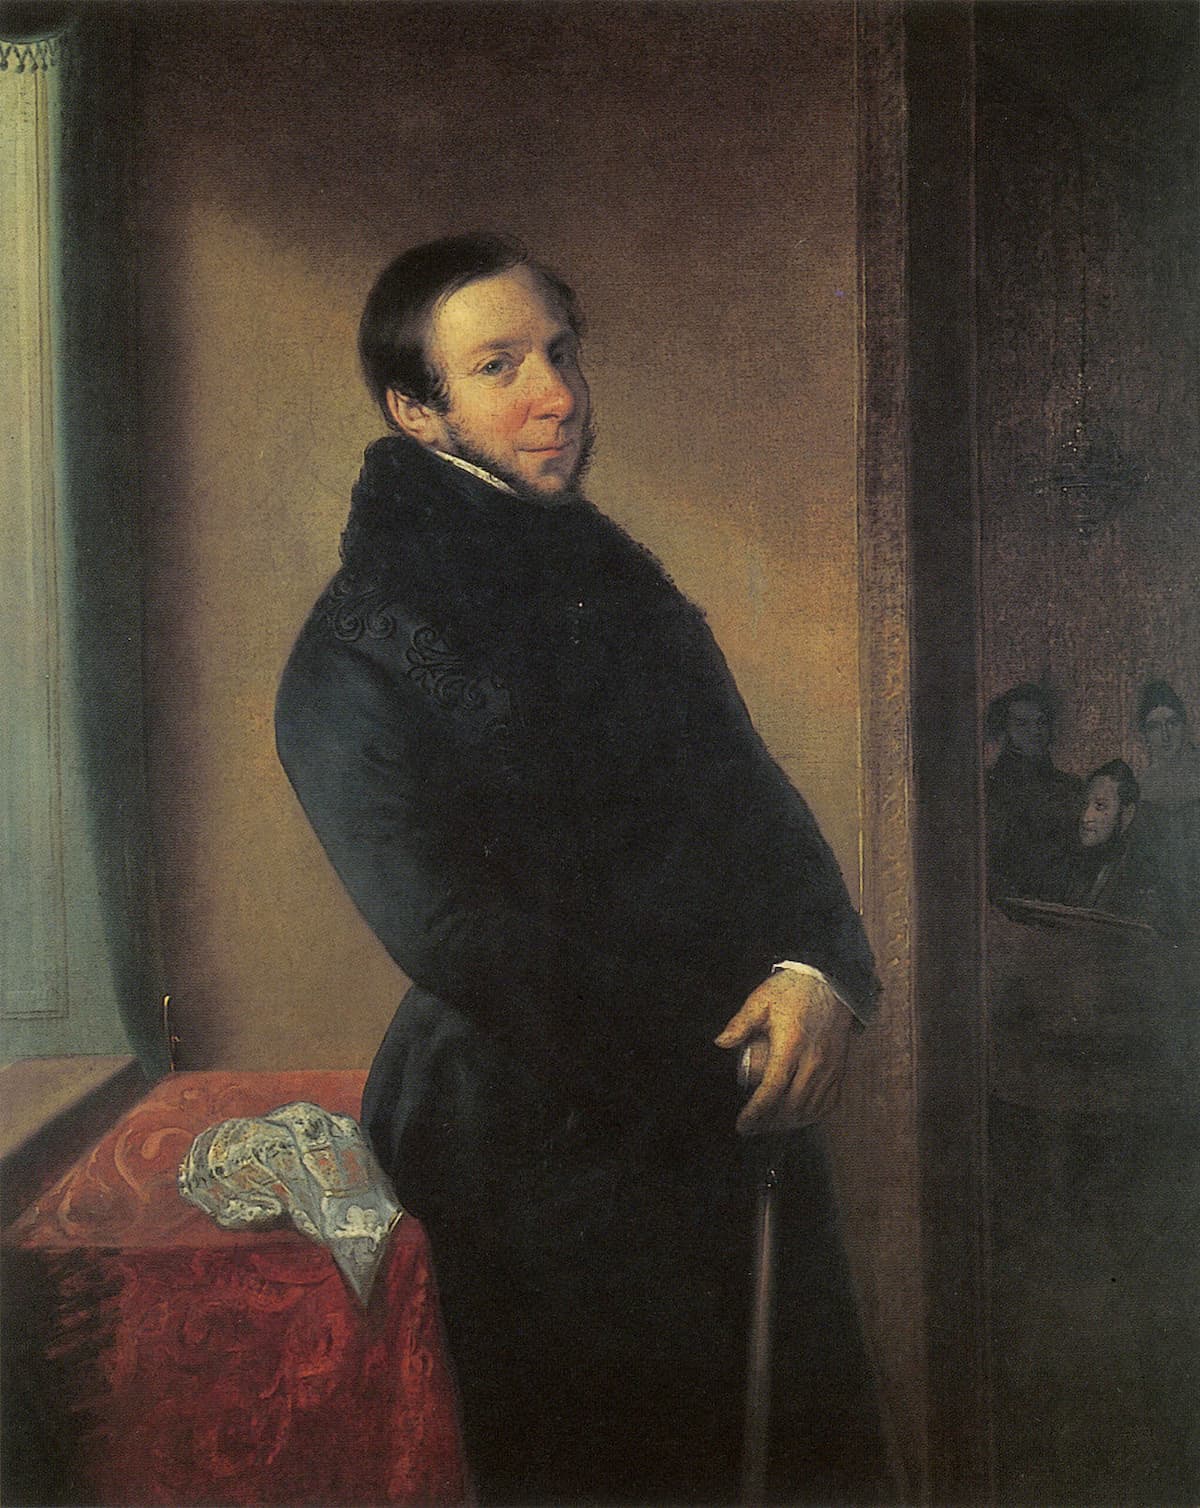 Domenico Barbaja in Naples in the 1820s.